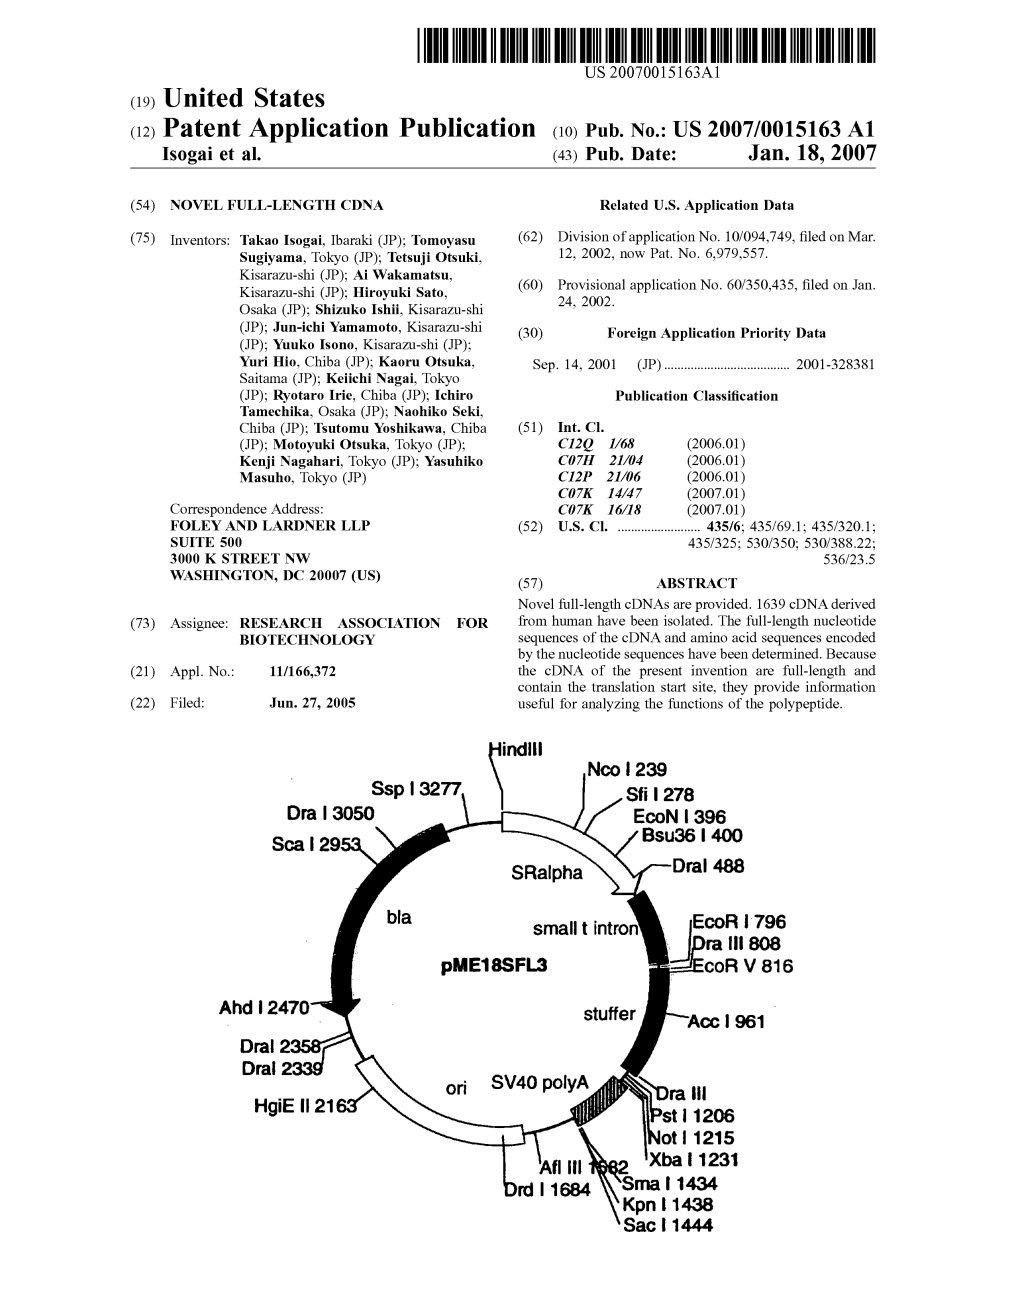 (12) Patent Application Publication (10) Pub. No.: US 2007/0015163 A1 Isogai Et Al